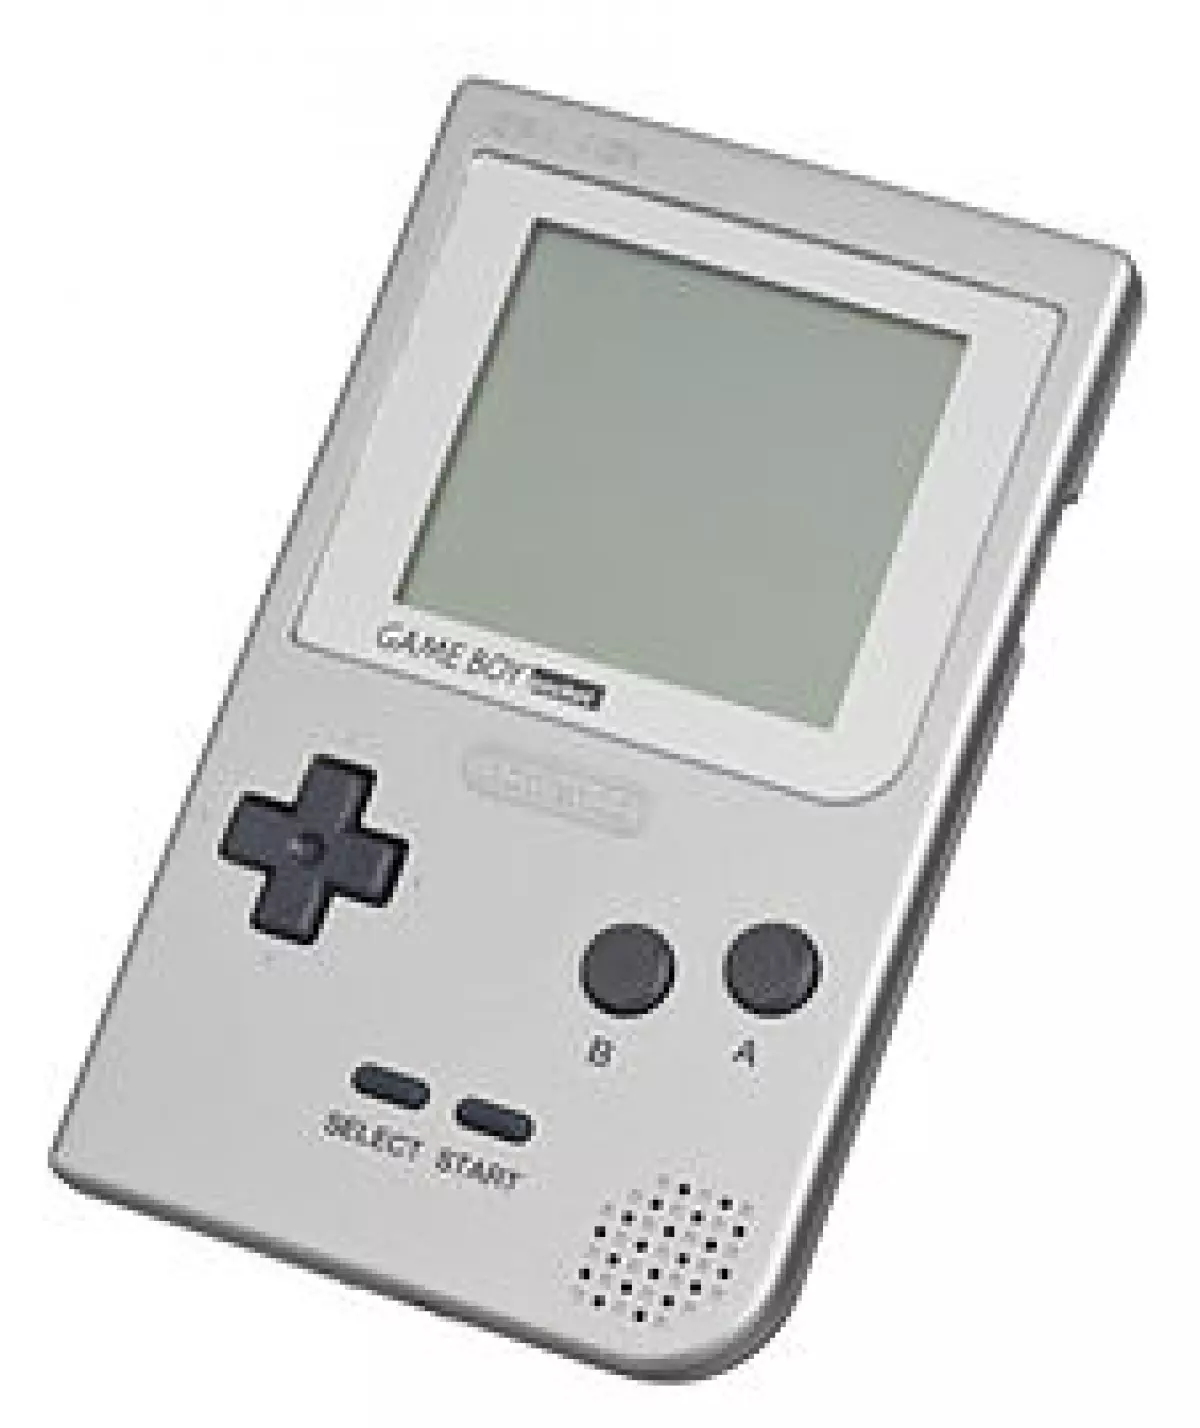 Dòng Game Boy